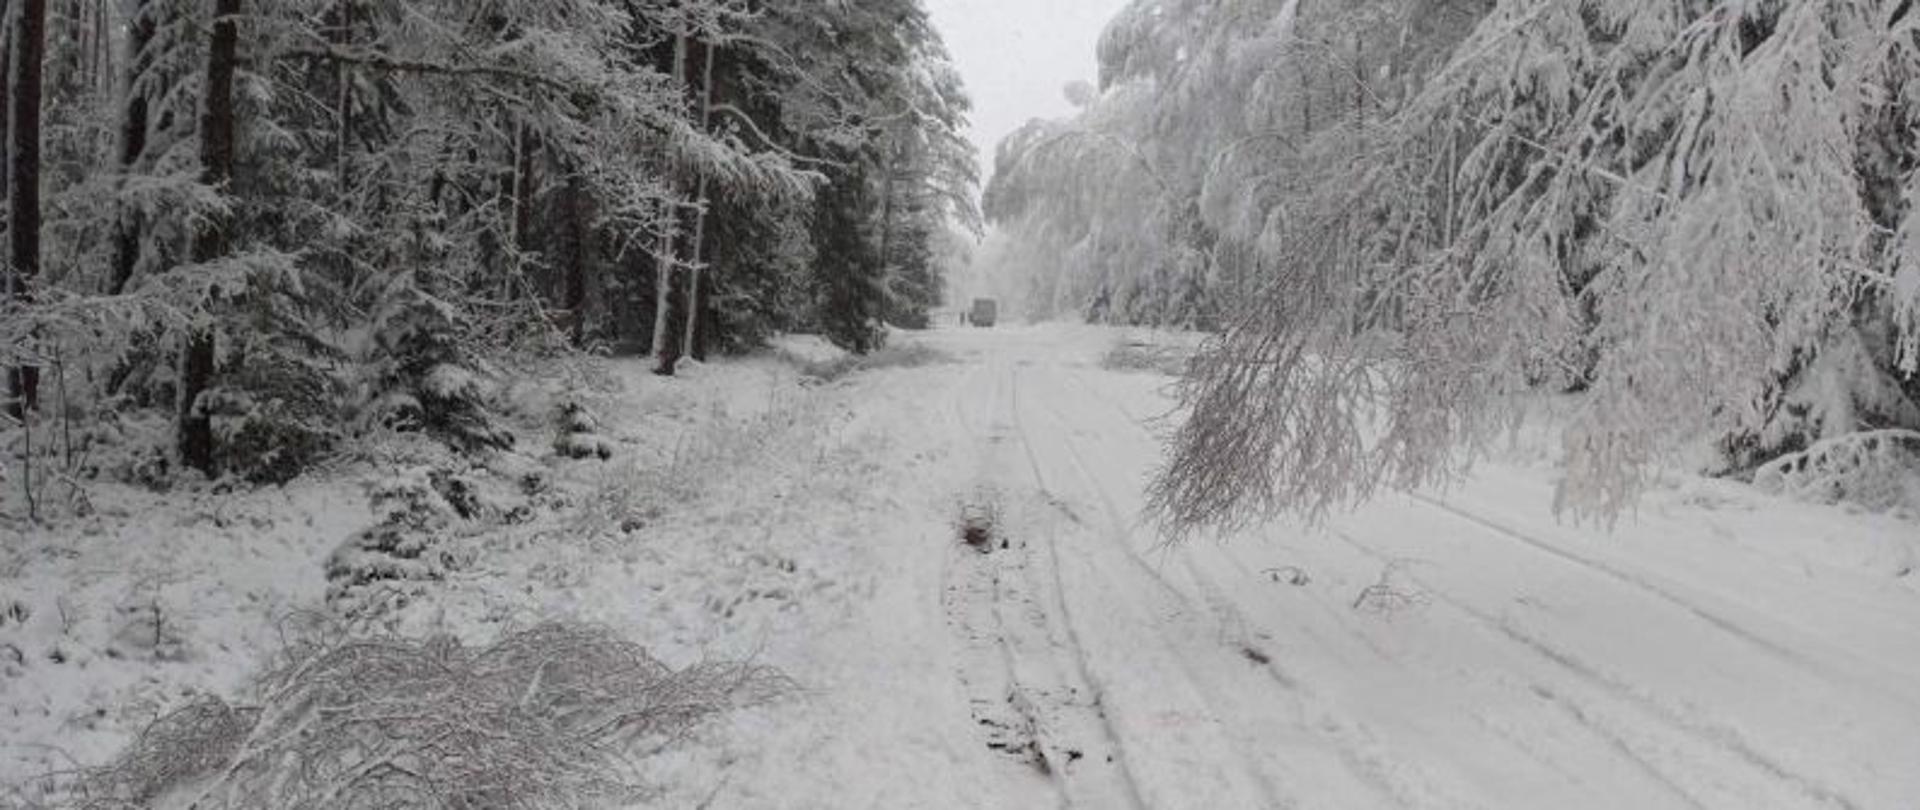 Widok na zaśnieżoną drogę. Bardzo dużo śniegu, na drodze, na drzewach. Drzewa mocno pochylone nad jezdnię. Na drzewach bardzo dużo śniegu. W oddali widać busa, który nie może dalej jechać bo drogę blokuje mu drzewo